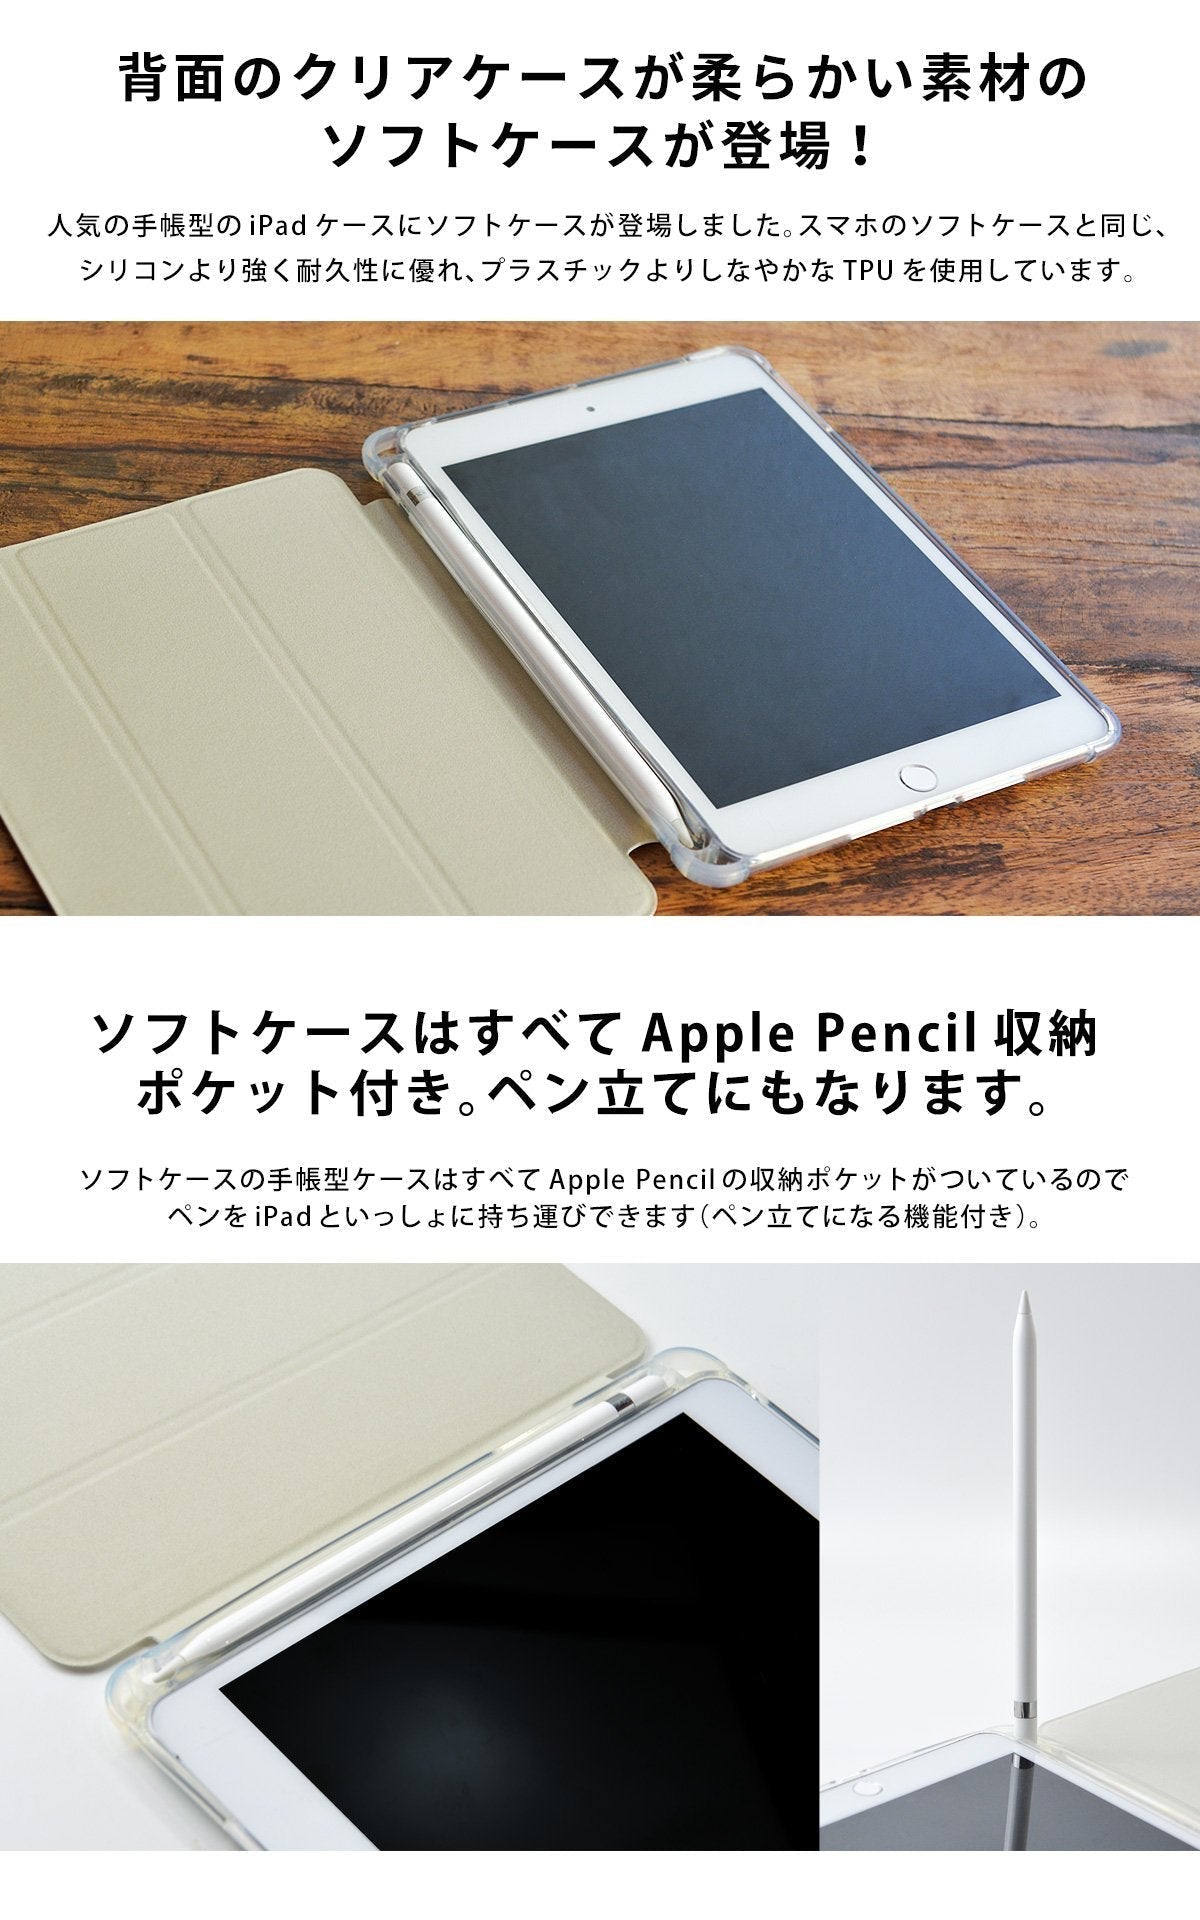 iPad ケース mini6/5/4 iPadケース おしゃれ かわいい クマ くま コーヒー 名入れ – スマホケースのCase garden